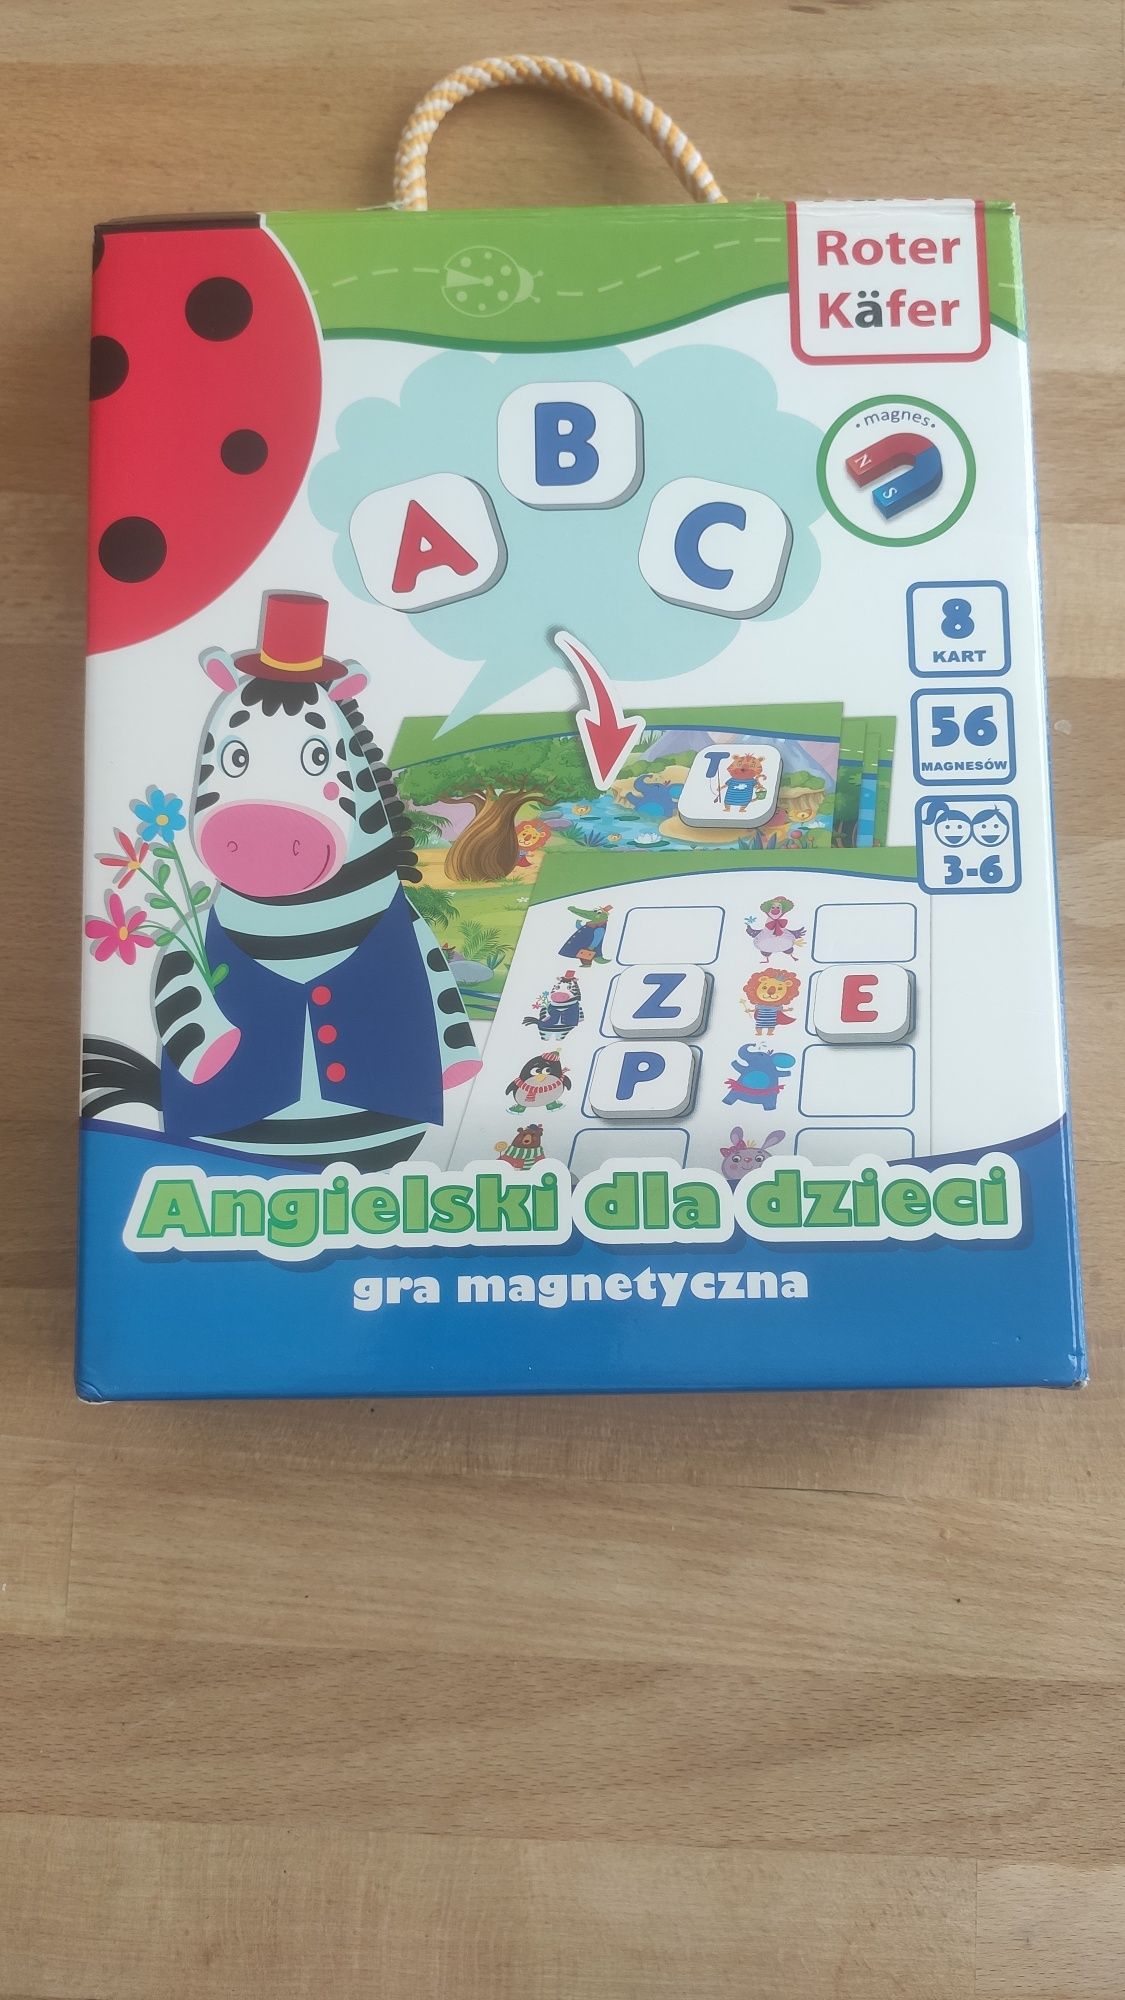 Angielski dla dzieci gra magnetyczna